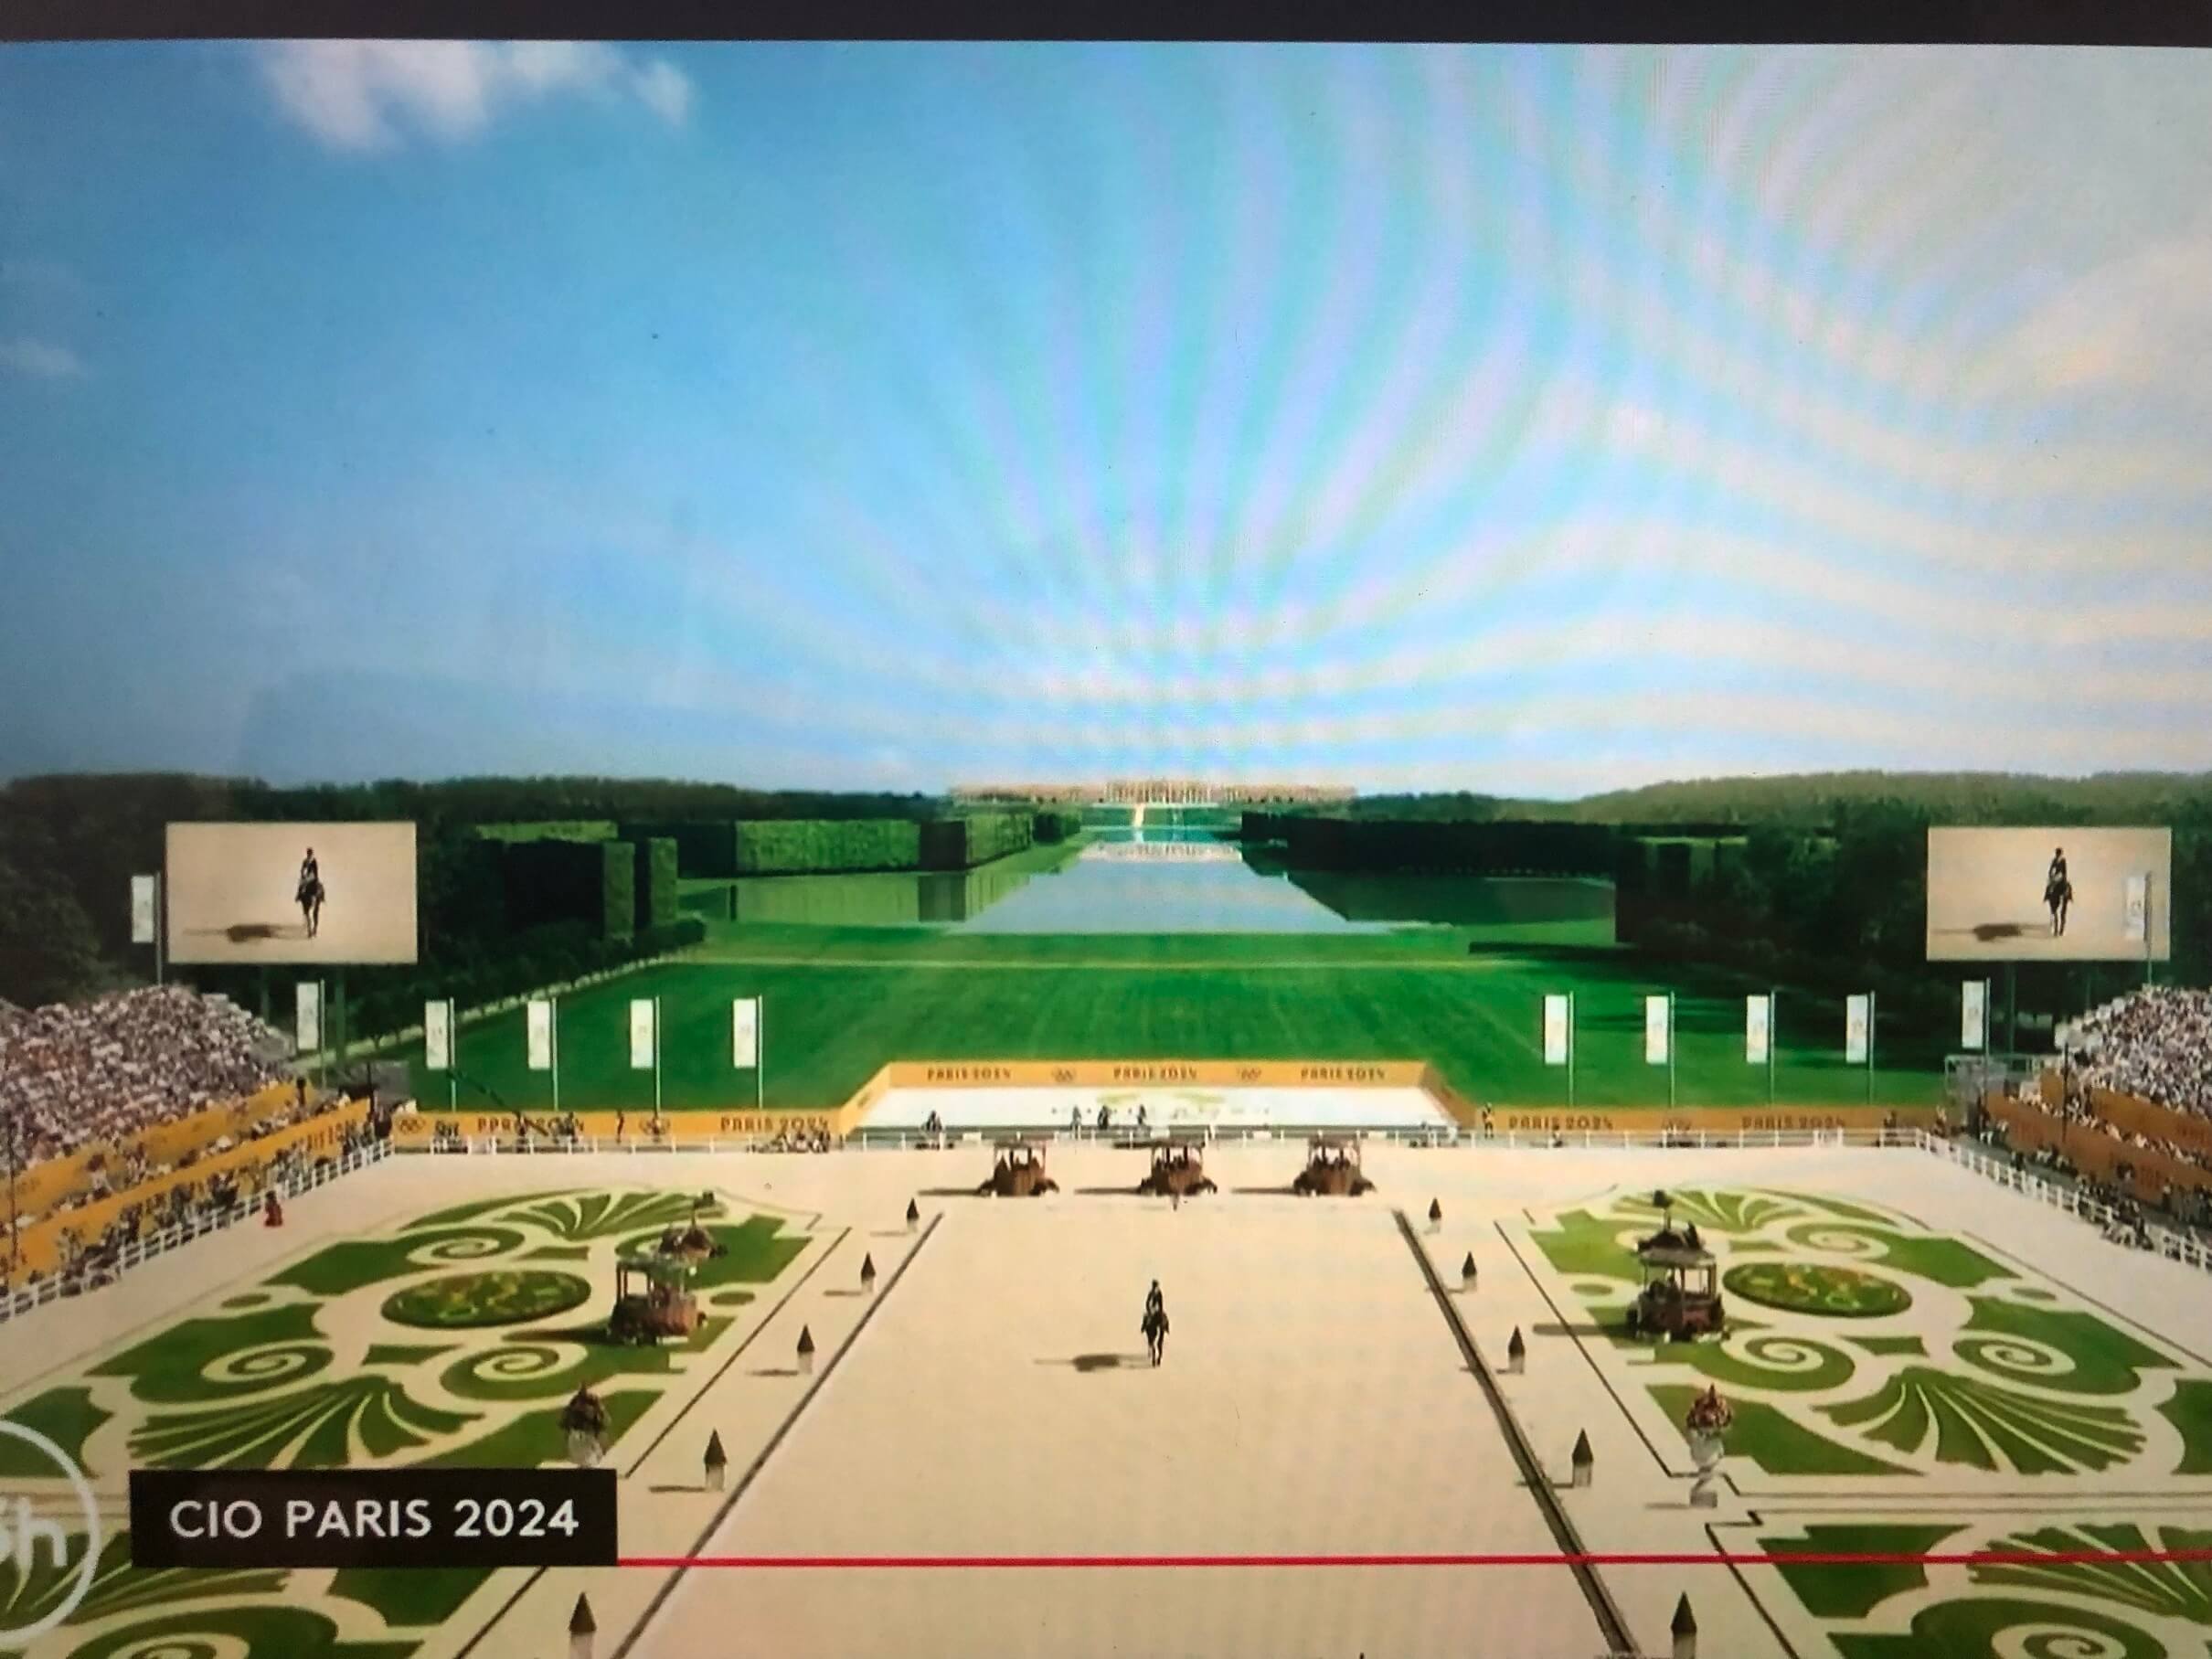 パリ最新情報「ヴェルサイユ宮殿でのオリンピック馬術競技、概要が明らかになる。チケット情報も」